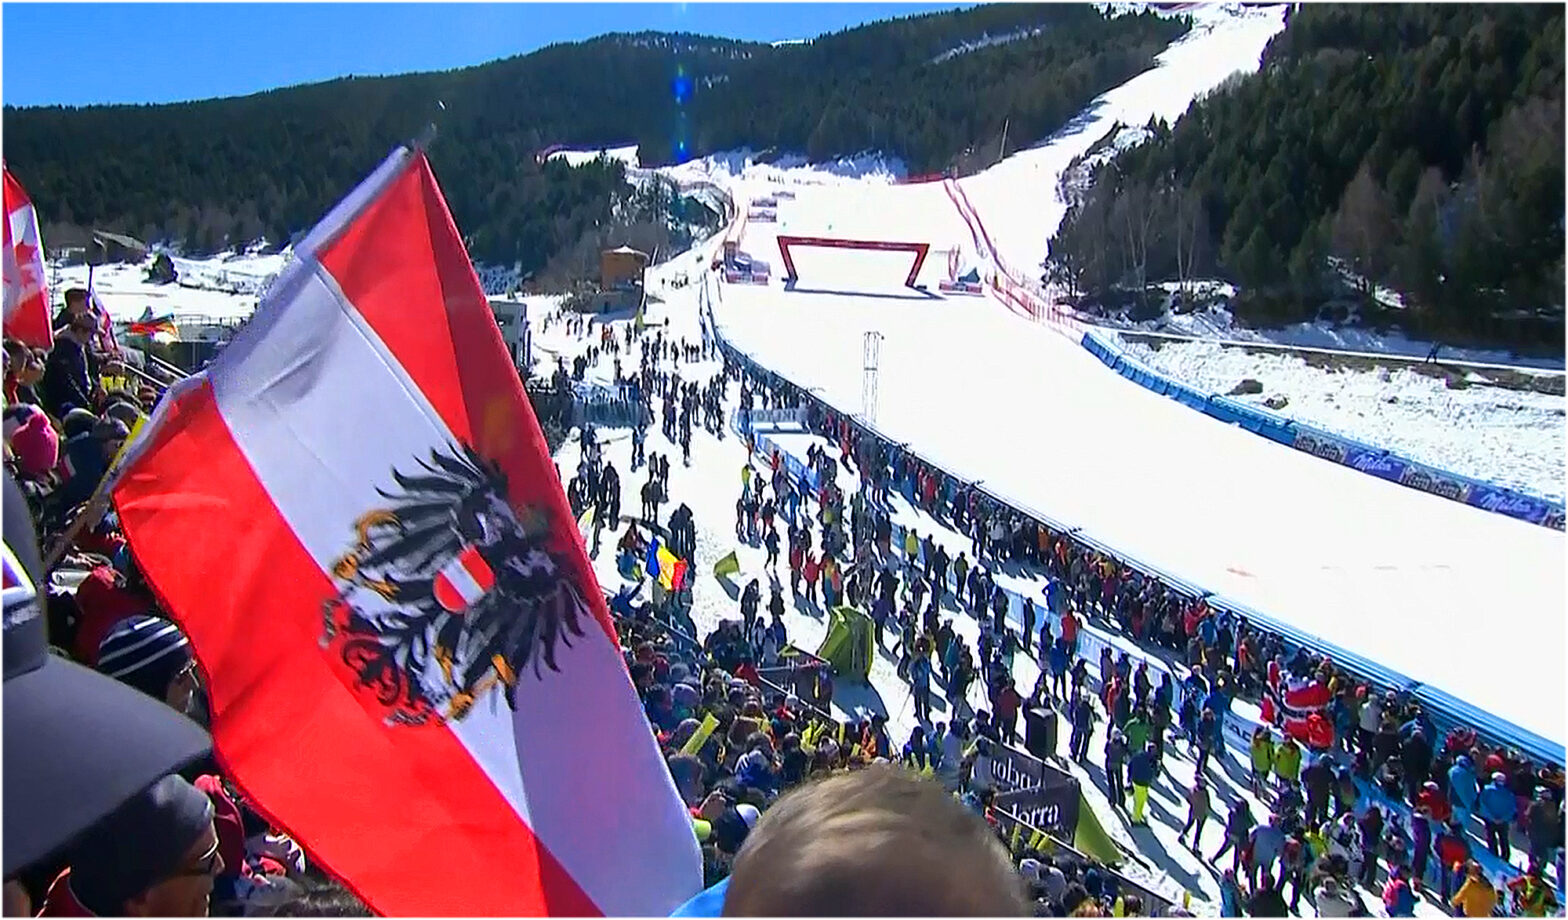 LIVE: 2. Abfahrtstraining der Damen beim Ski Weltcup Finale in Soldeu - Vorbericht, Startliste und Liveticker - Startzeit: 11.15 Uhr